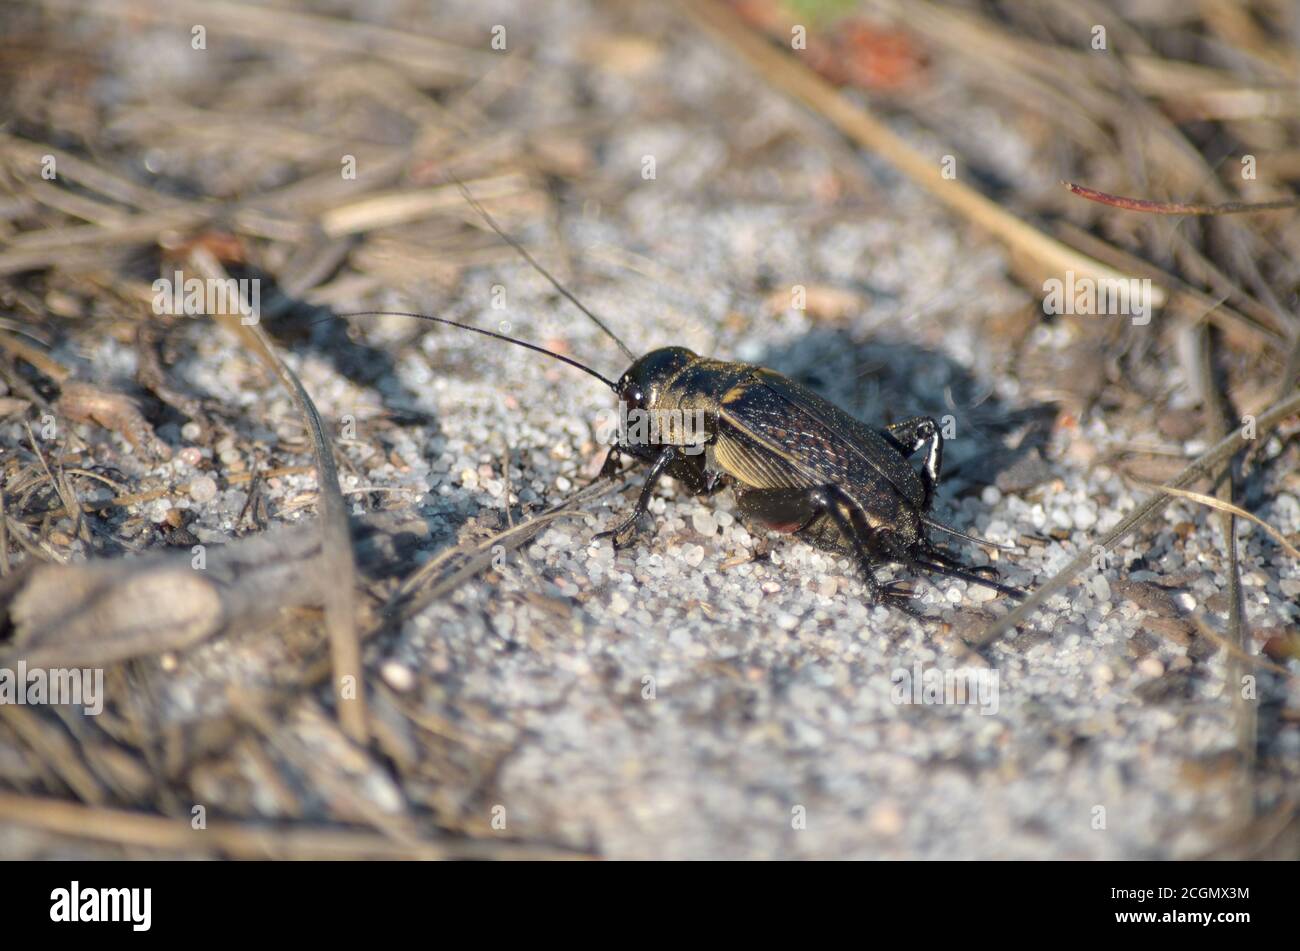 Gryllus campestris. Feld Cricket in seinem natürlichen Lebensraum. Fauna der Ukraine. Geringe Schärfentiefe, Nahaufnahme. Stockfoto